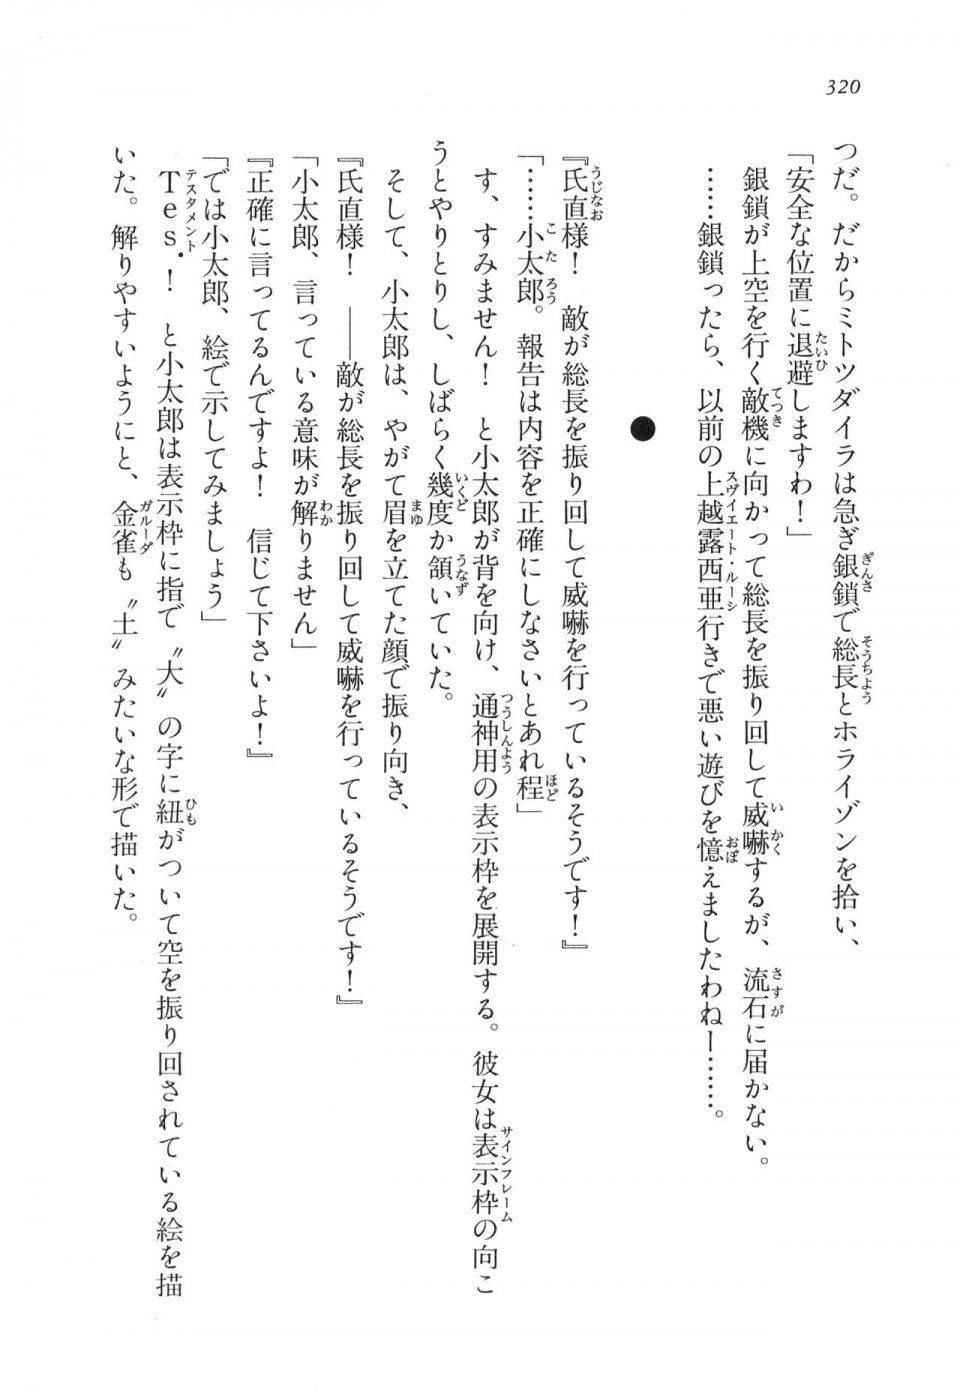 Kyoukai Senjou no Horizon LN Vol 11(5A) - Photo #320